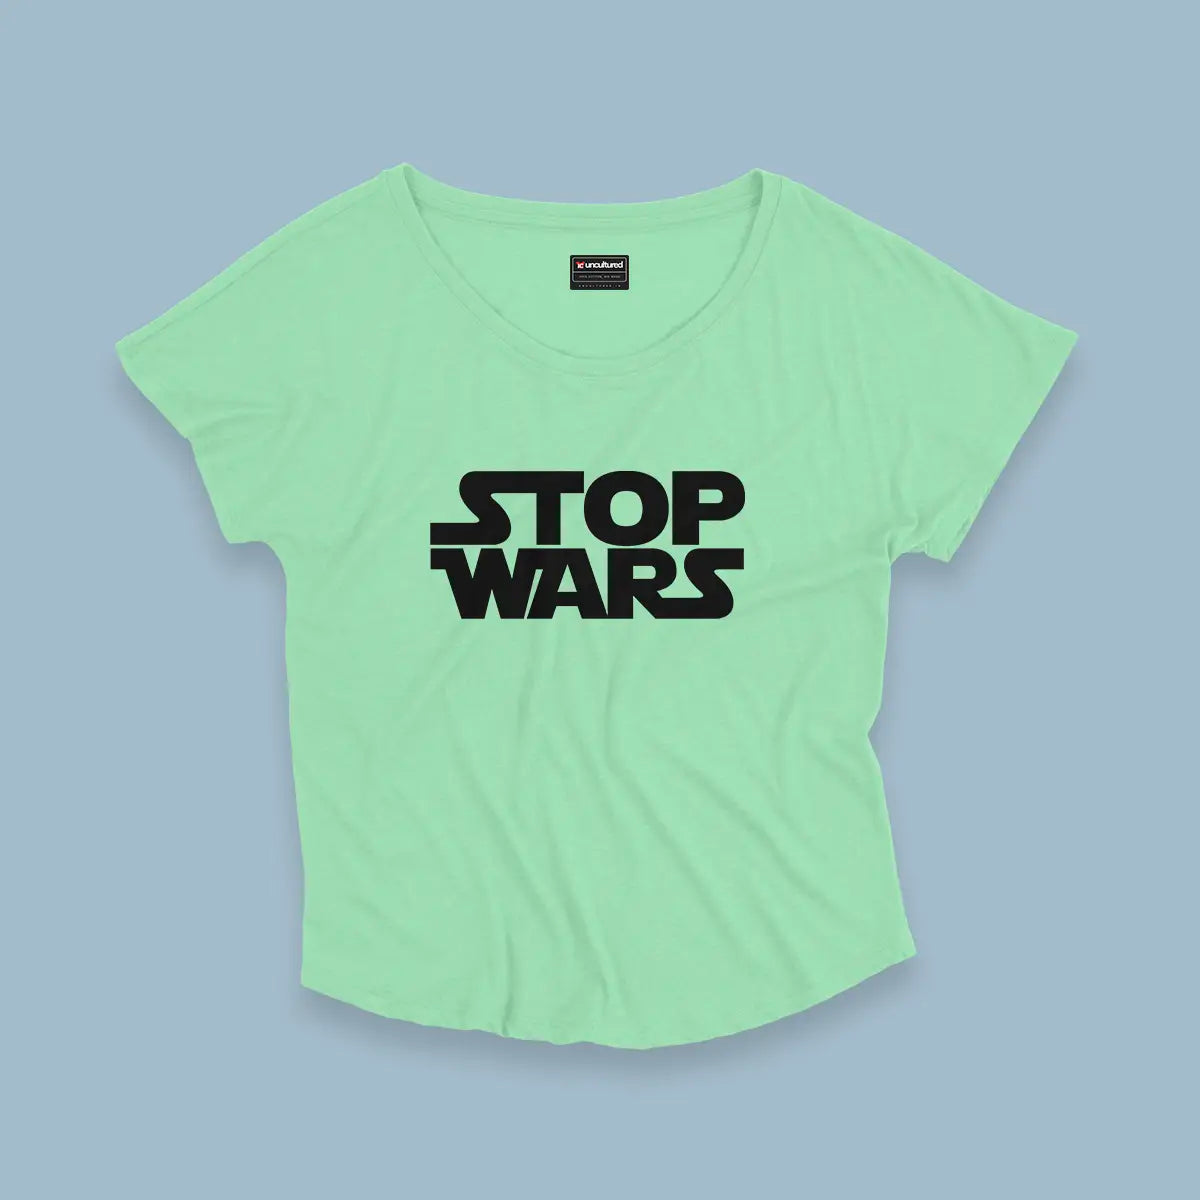 Stop wars - Croptop